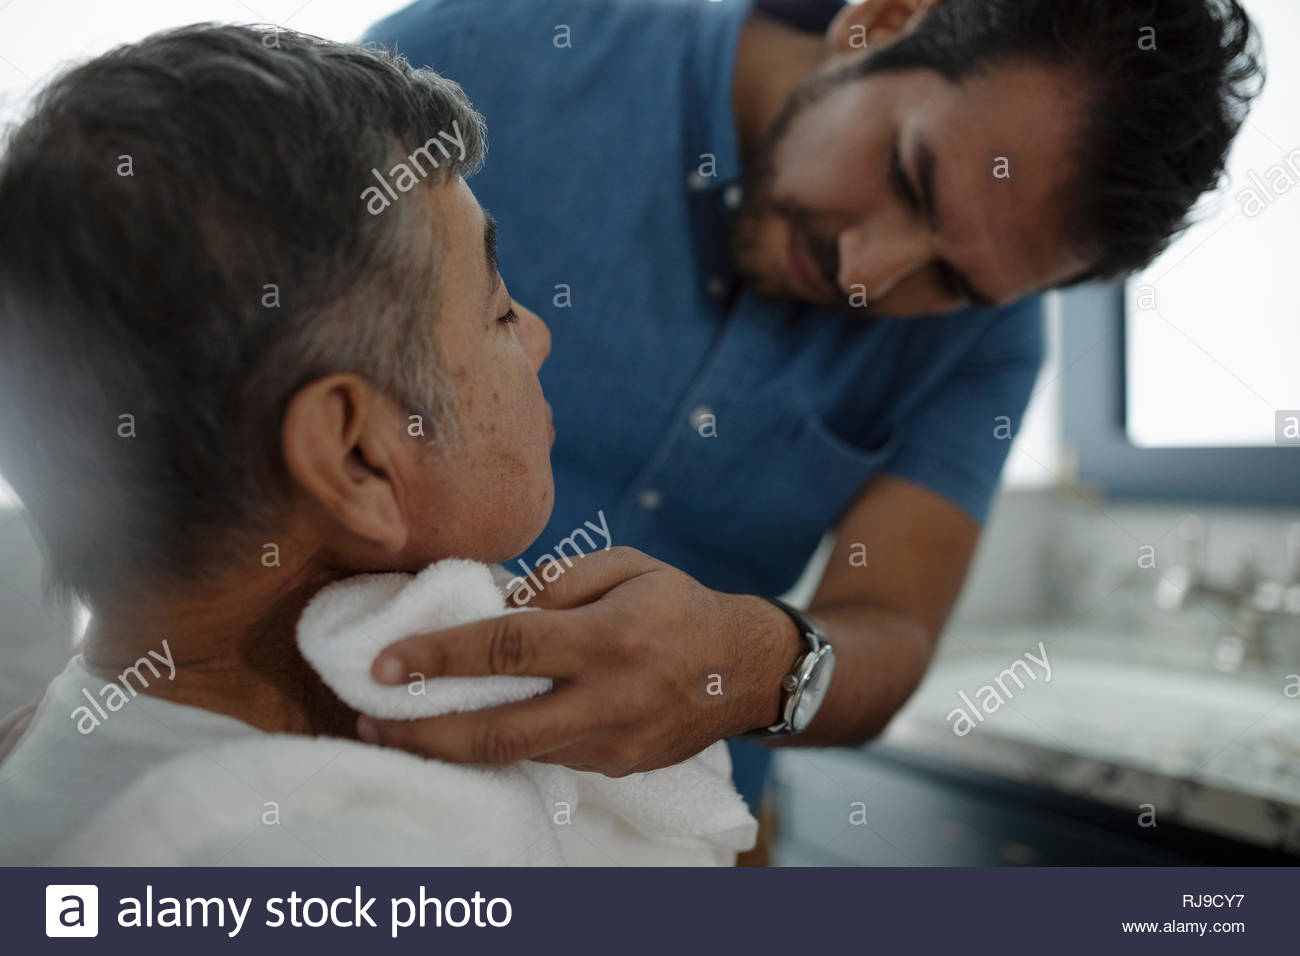 Latinx son shaving senior father s face Stock Photo